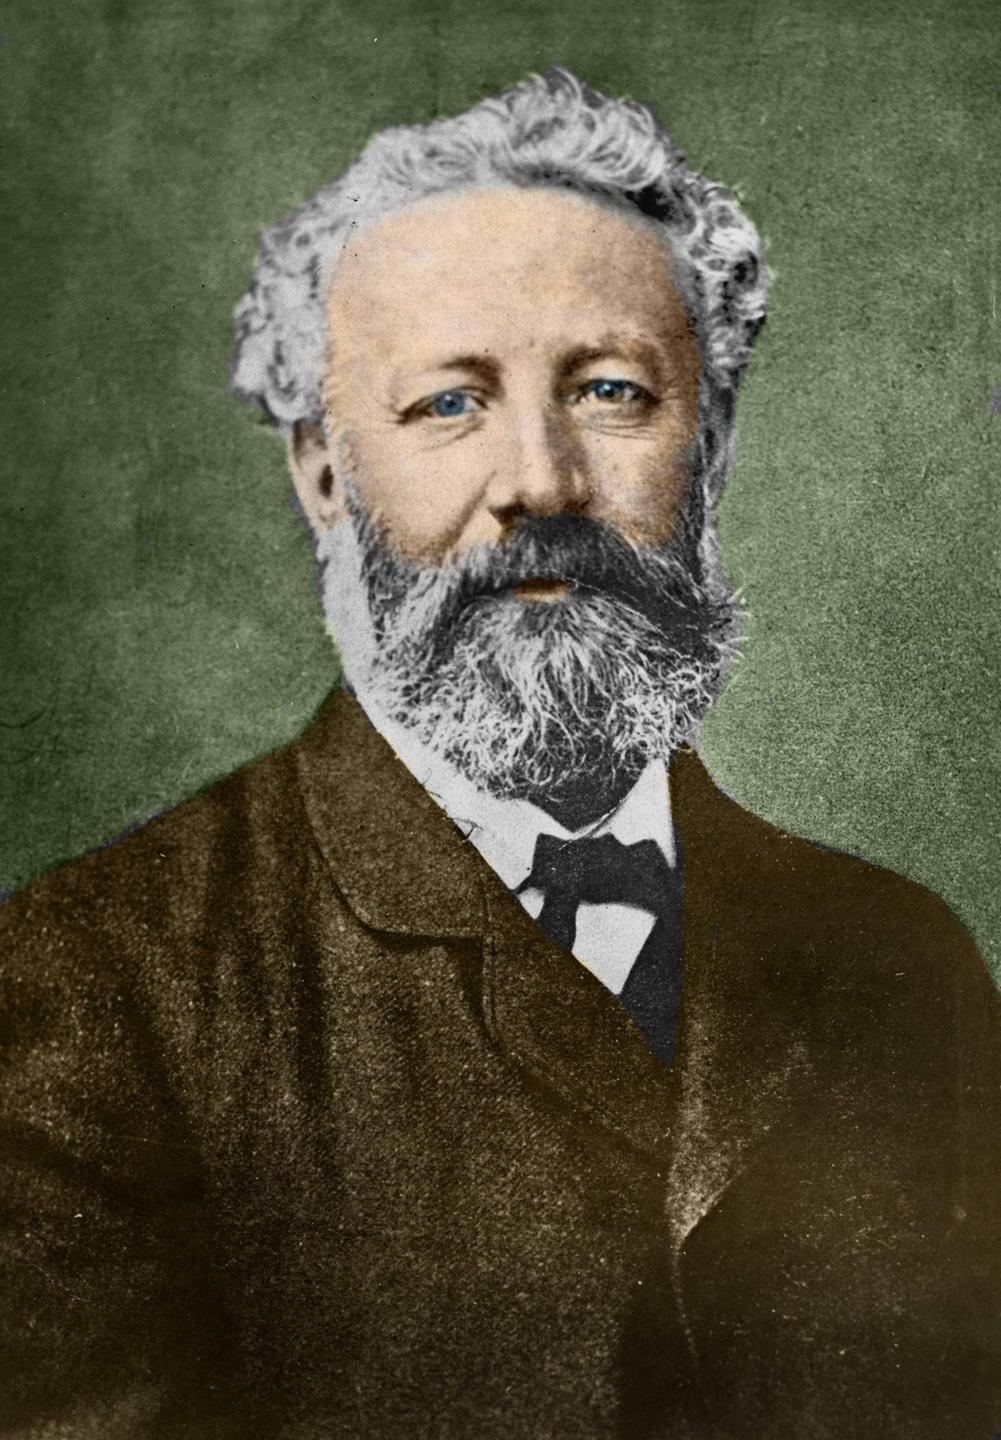 Porträt des französischen Schriftstellers Jules Verne